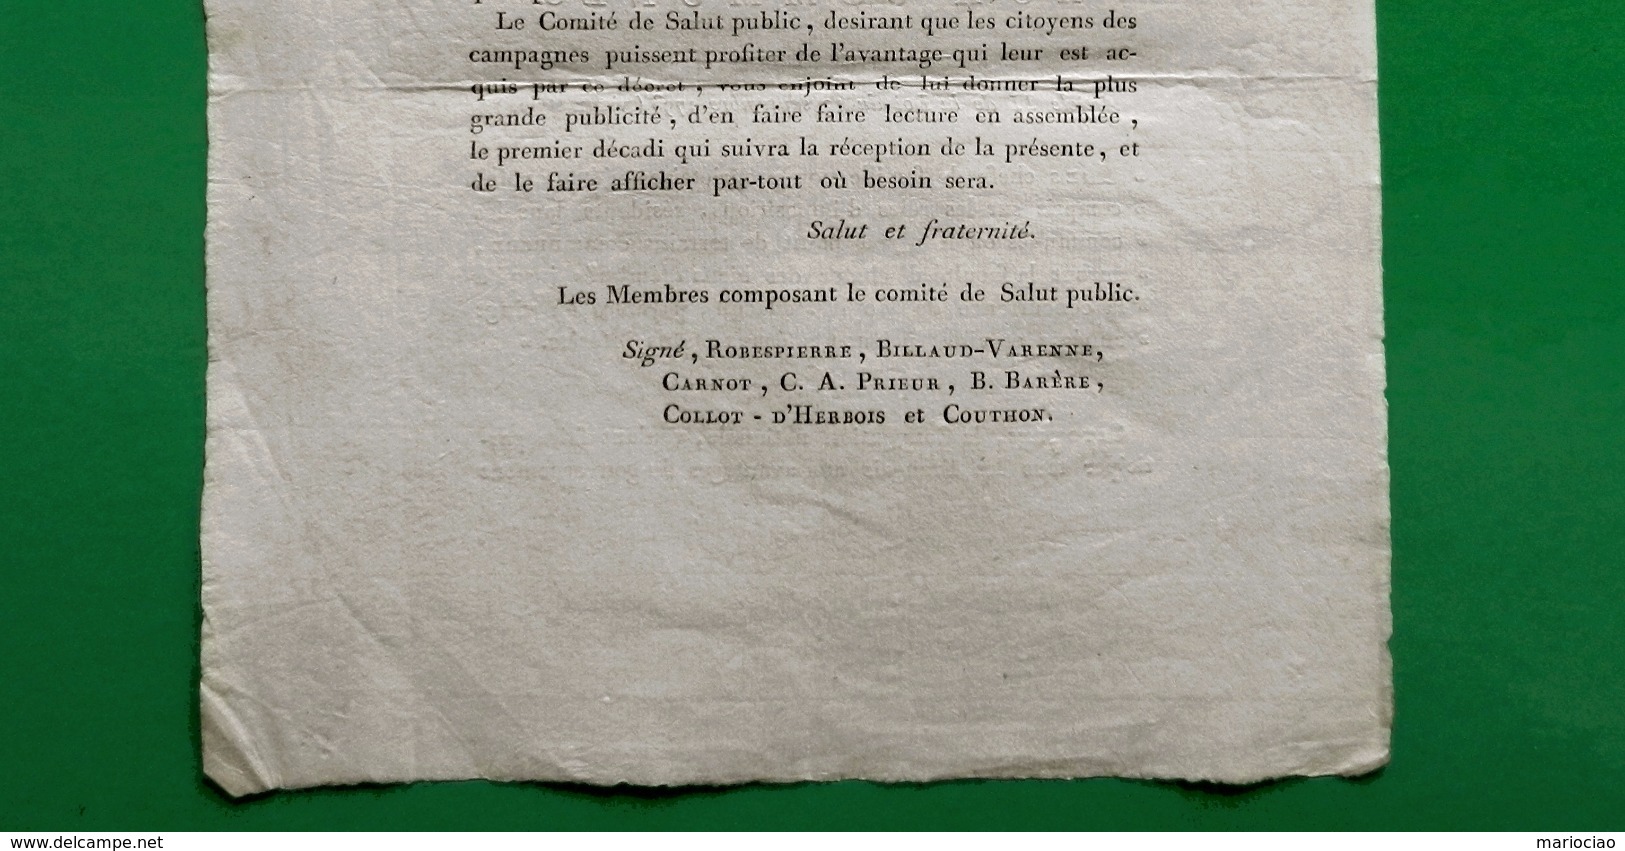 D-FR Révolution 1794 Comité de Salut Public Vente biens d&rsquo;Emigrés signé ROBESPIERRE etc.